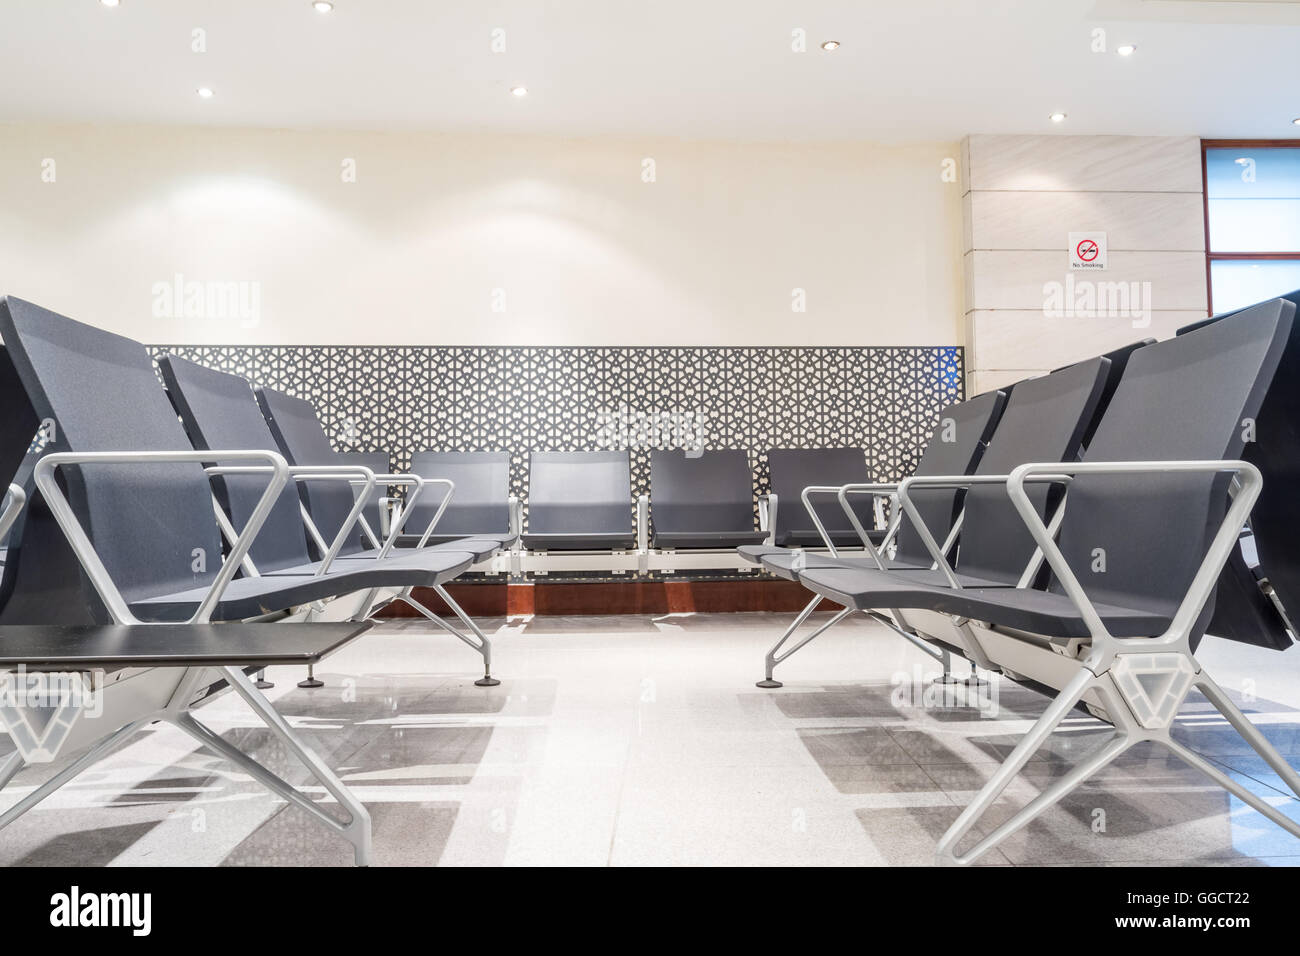 L'arrivée de l'aéroport de Doha, ces chaises dans le hall pour les passagers Banque D'Images